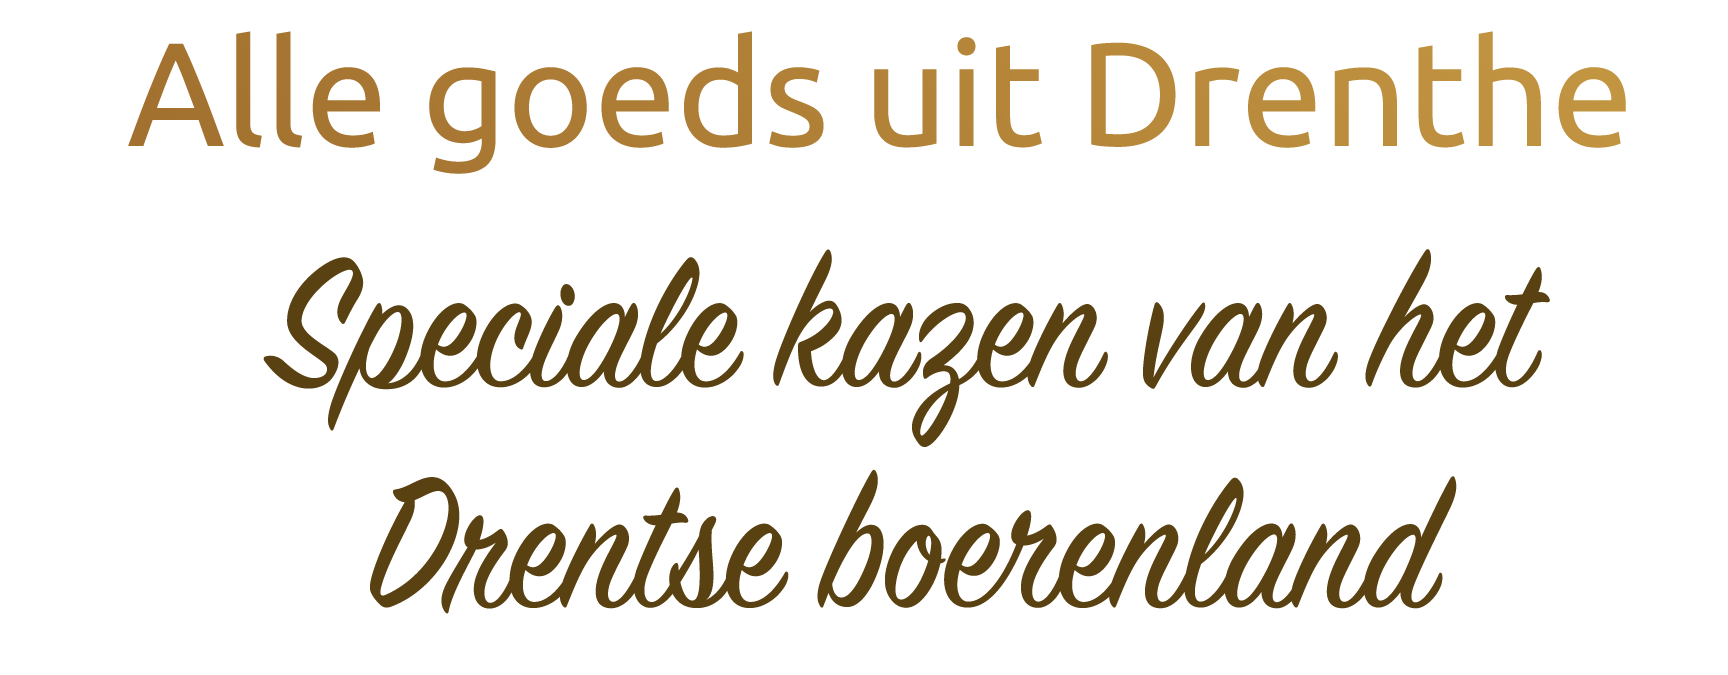 Alle goeds uit Drenthe